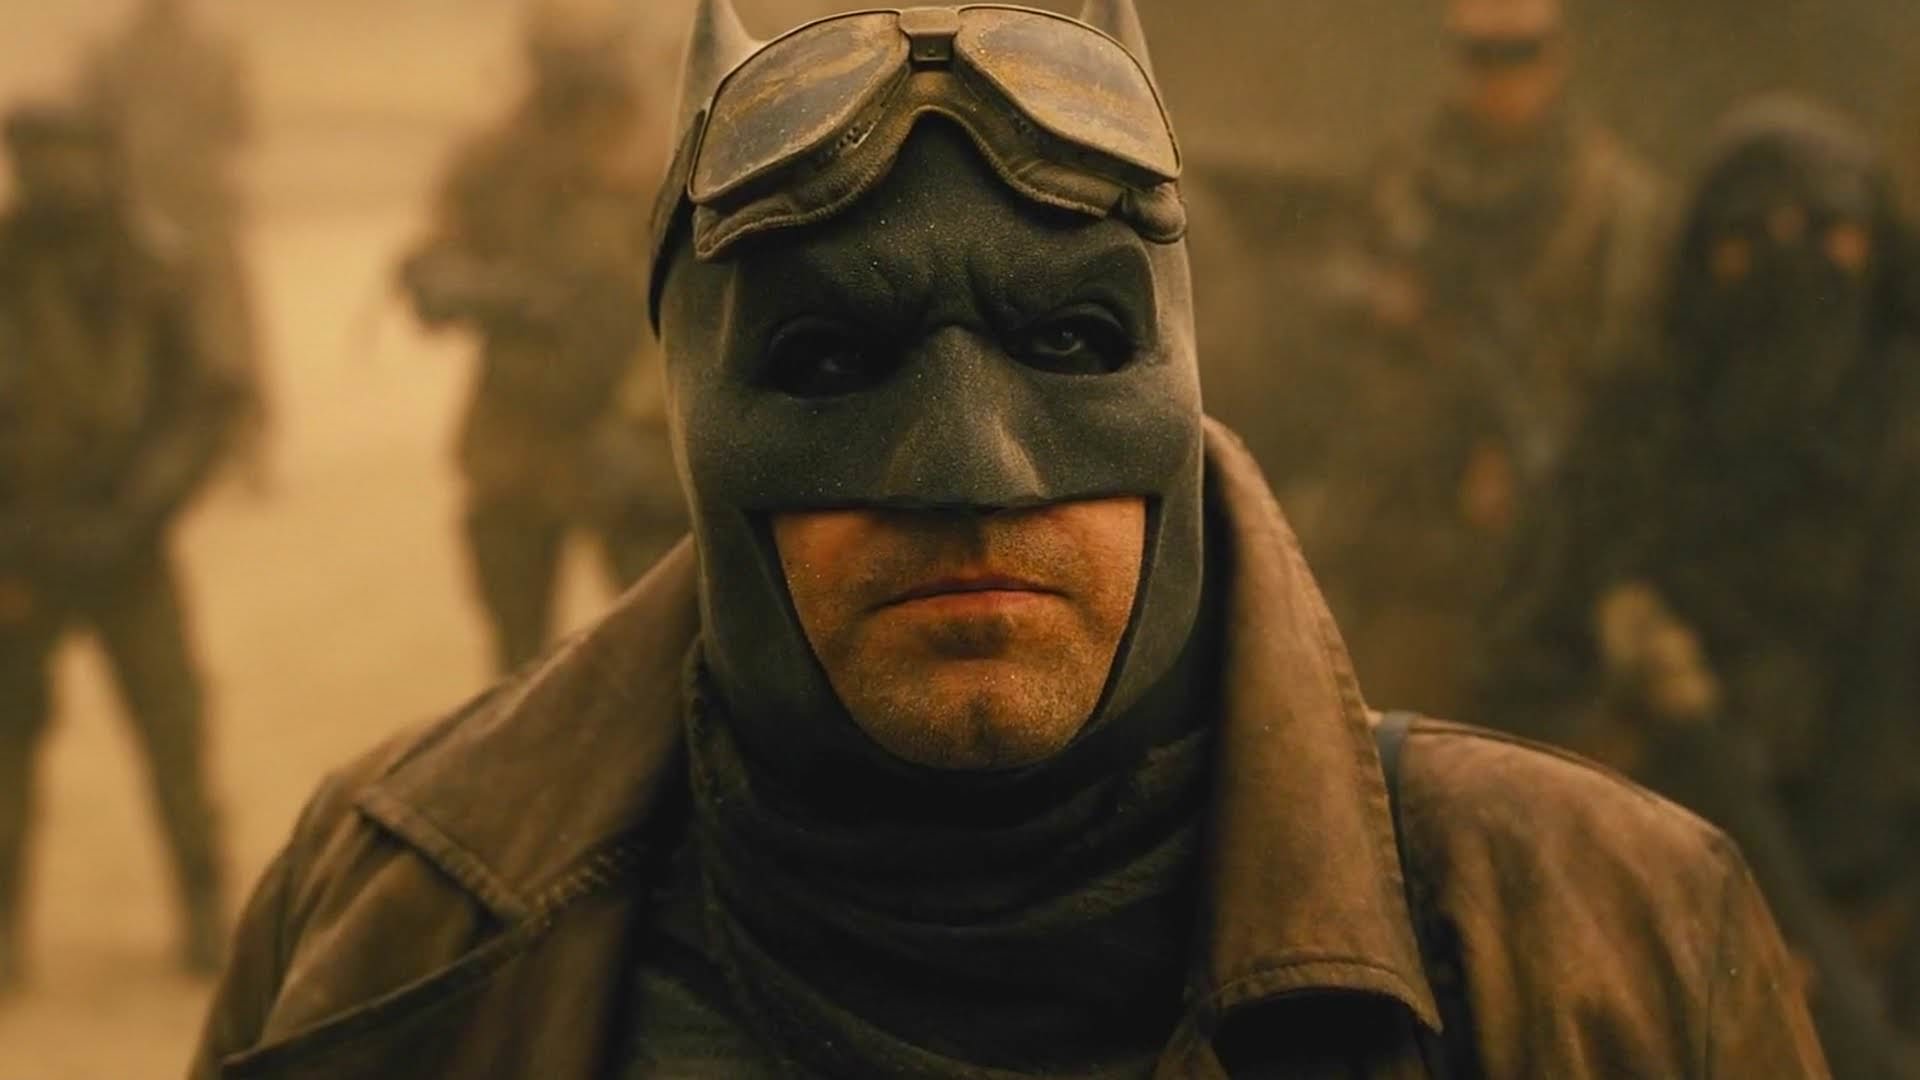 بن افلک در نقش بتمن در صحنه Knightmare فیلم Batman v Superman: Dawn of Justice